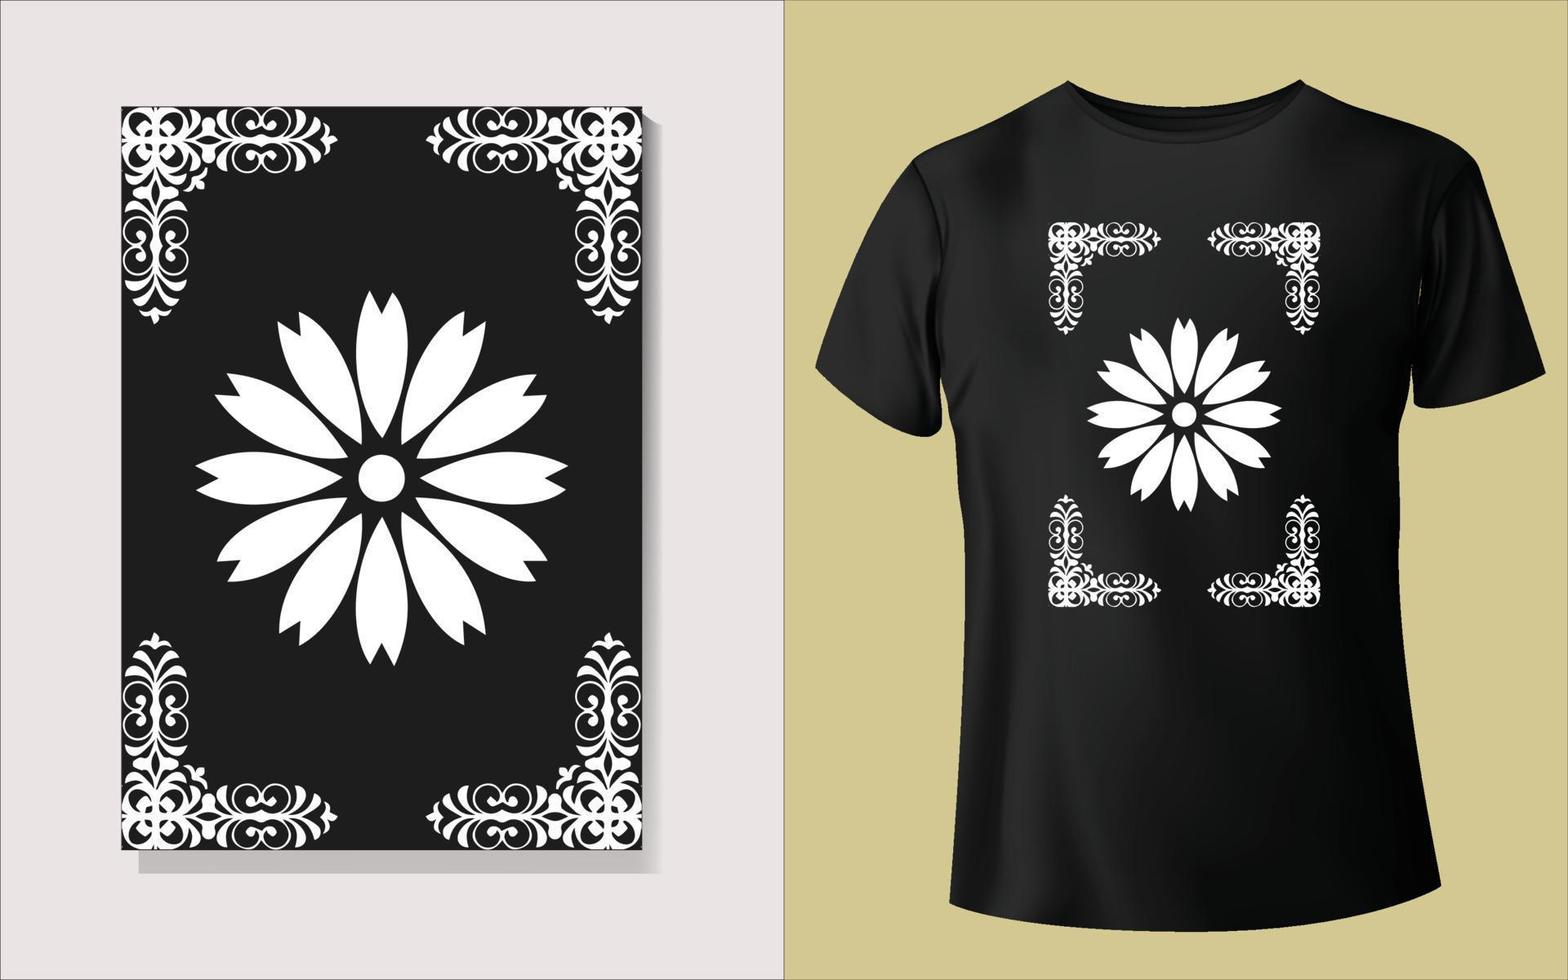 schwarz und Weiß Tee Hemd Design vektor